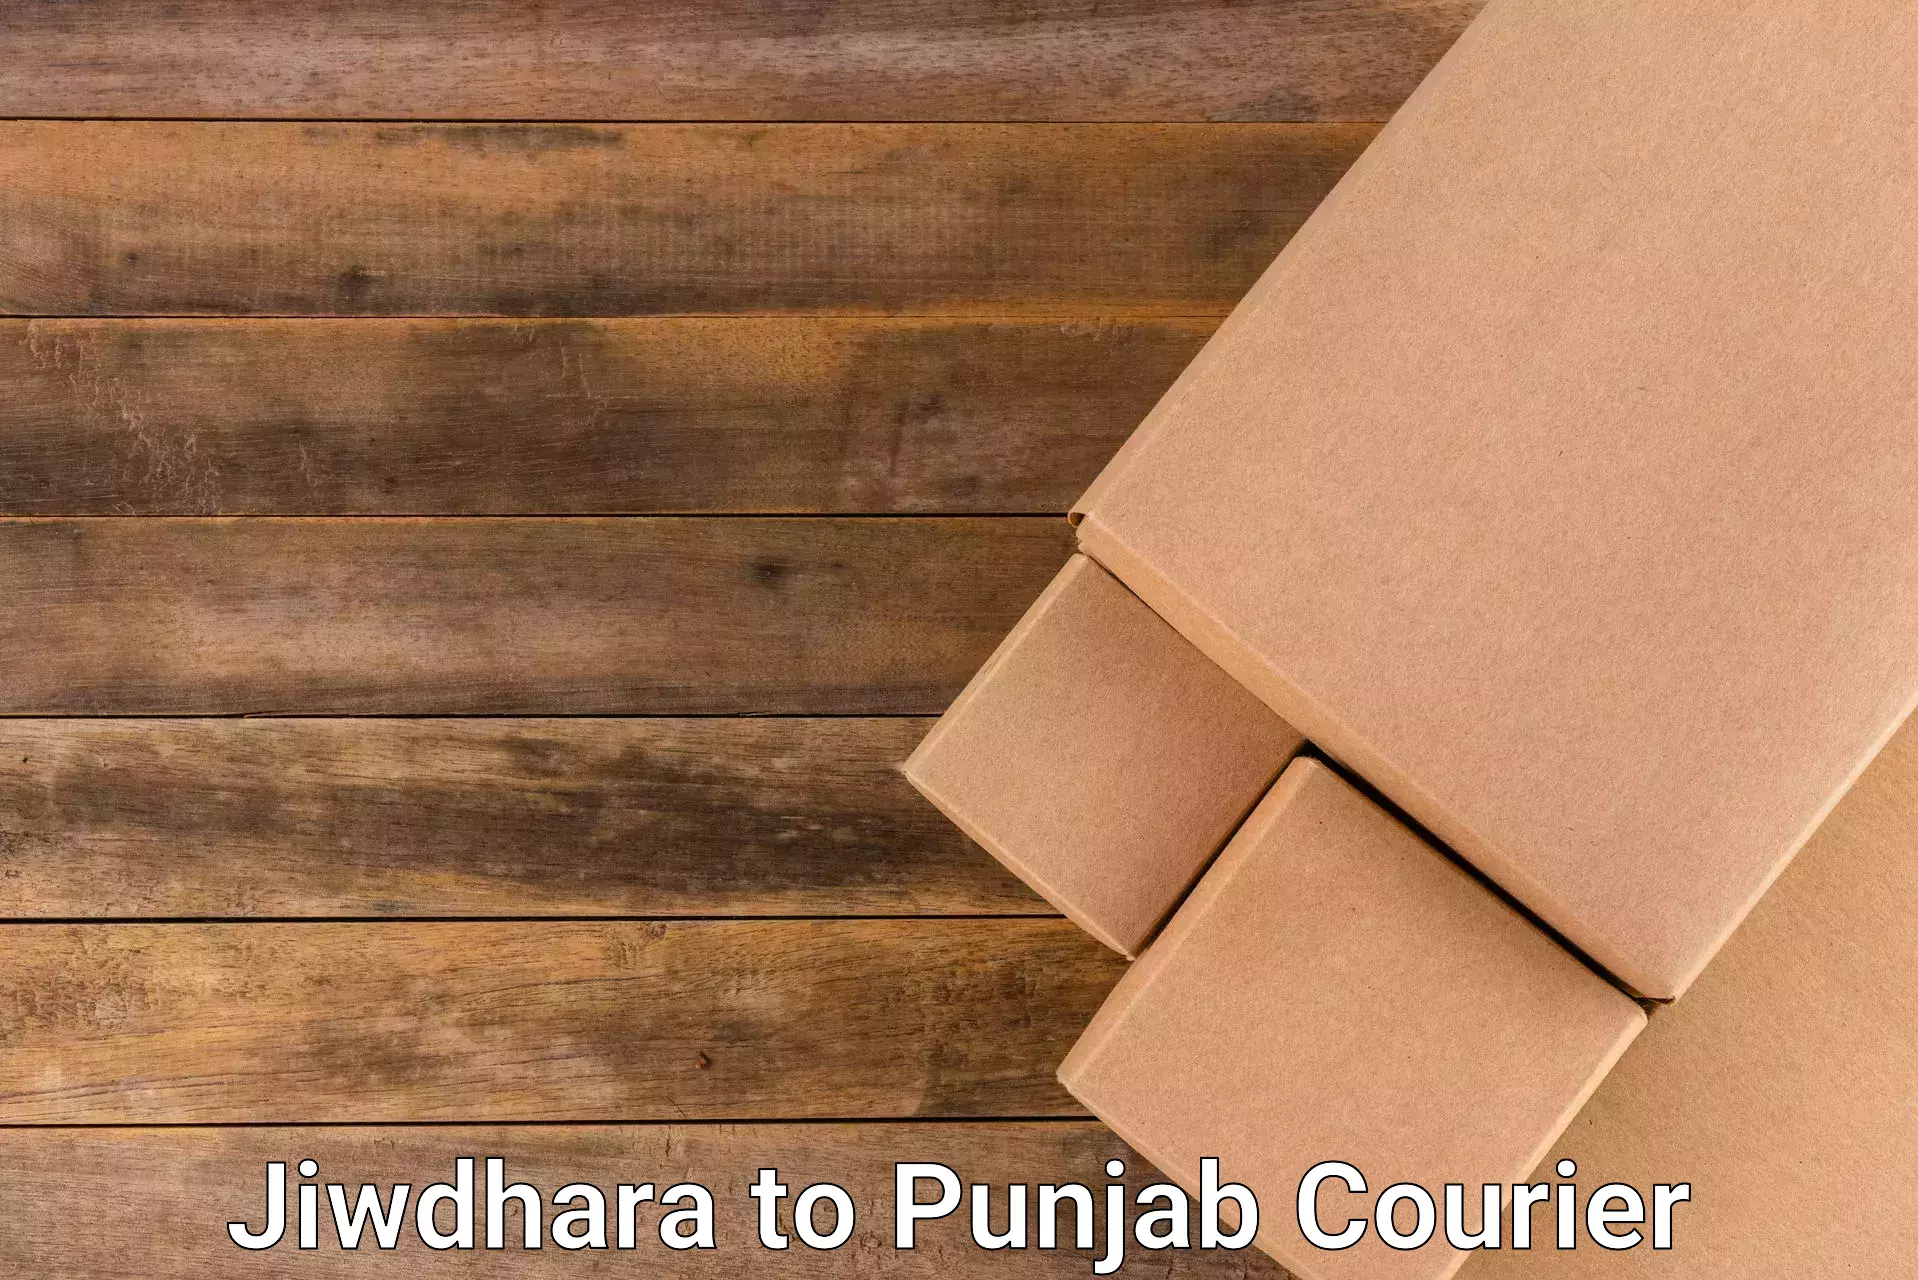 Discount courier rates Jiwdhara to Punjab